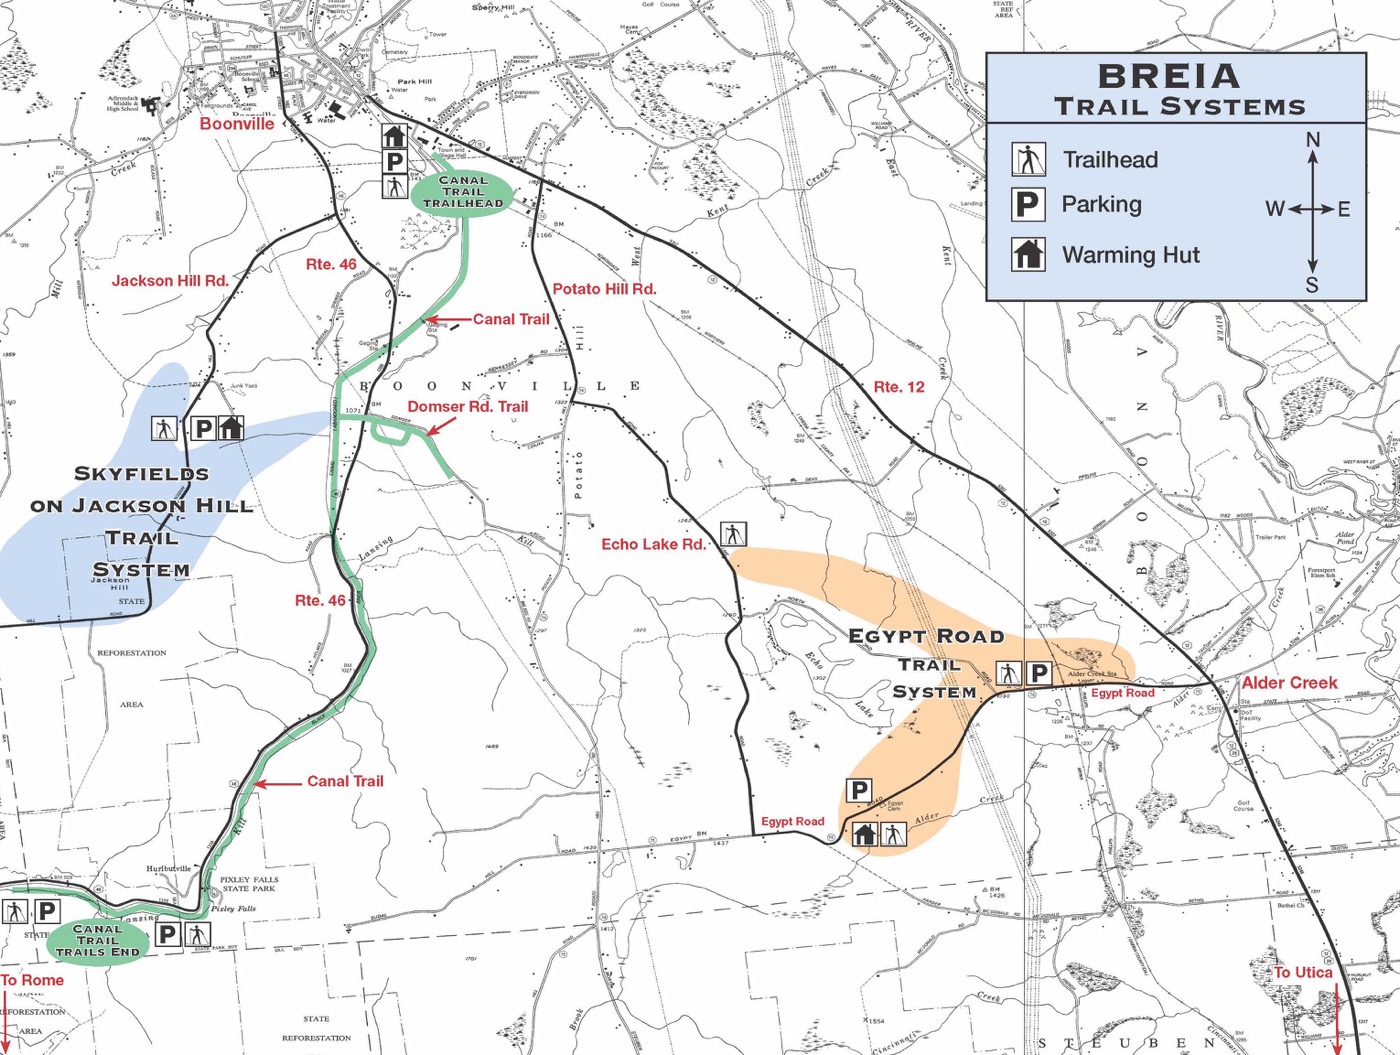 BREIA trail map